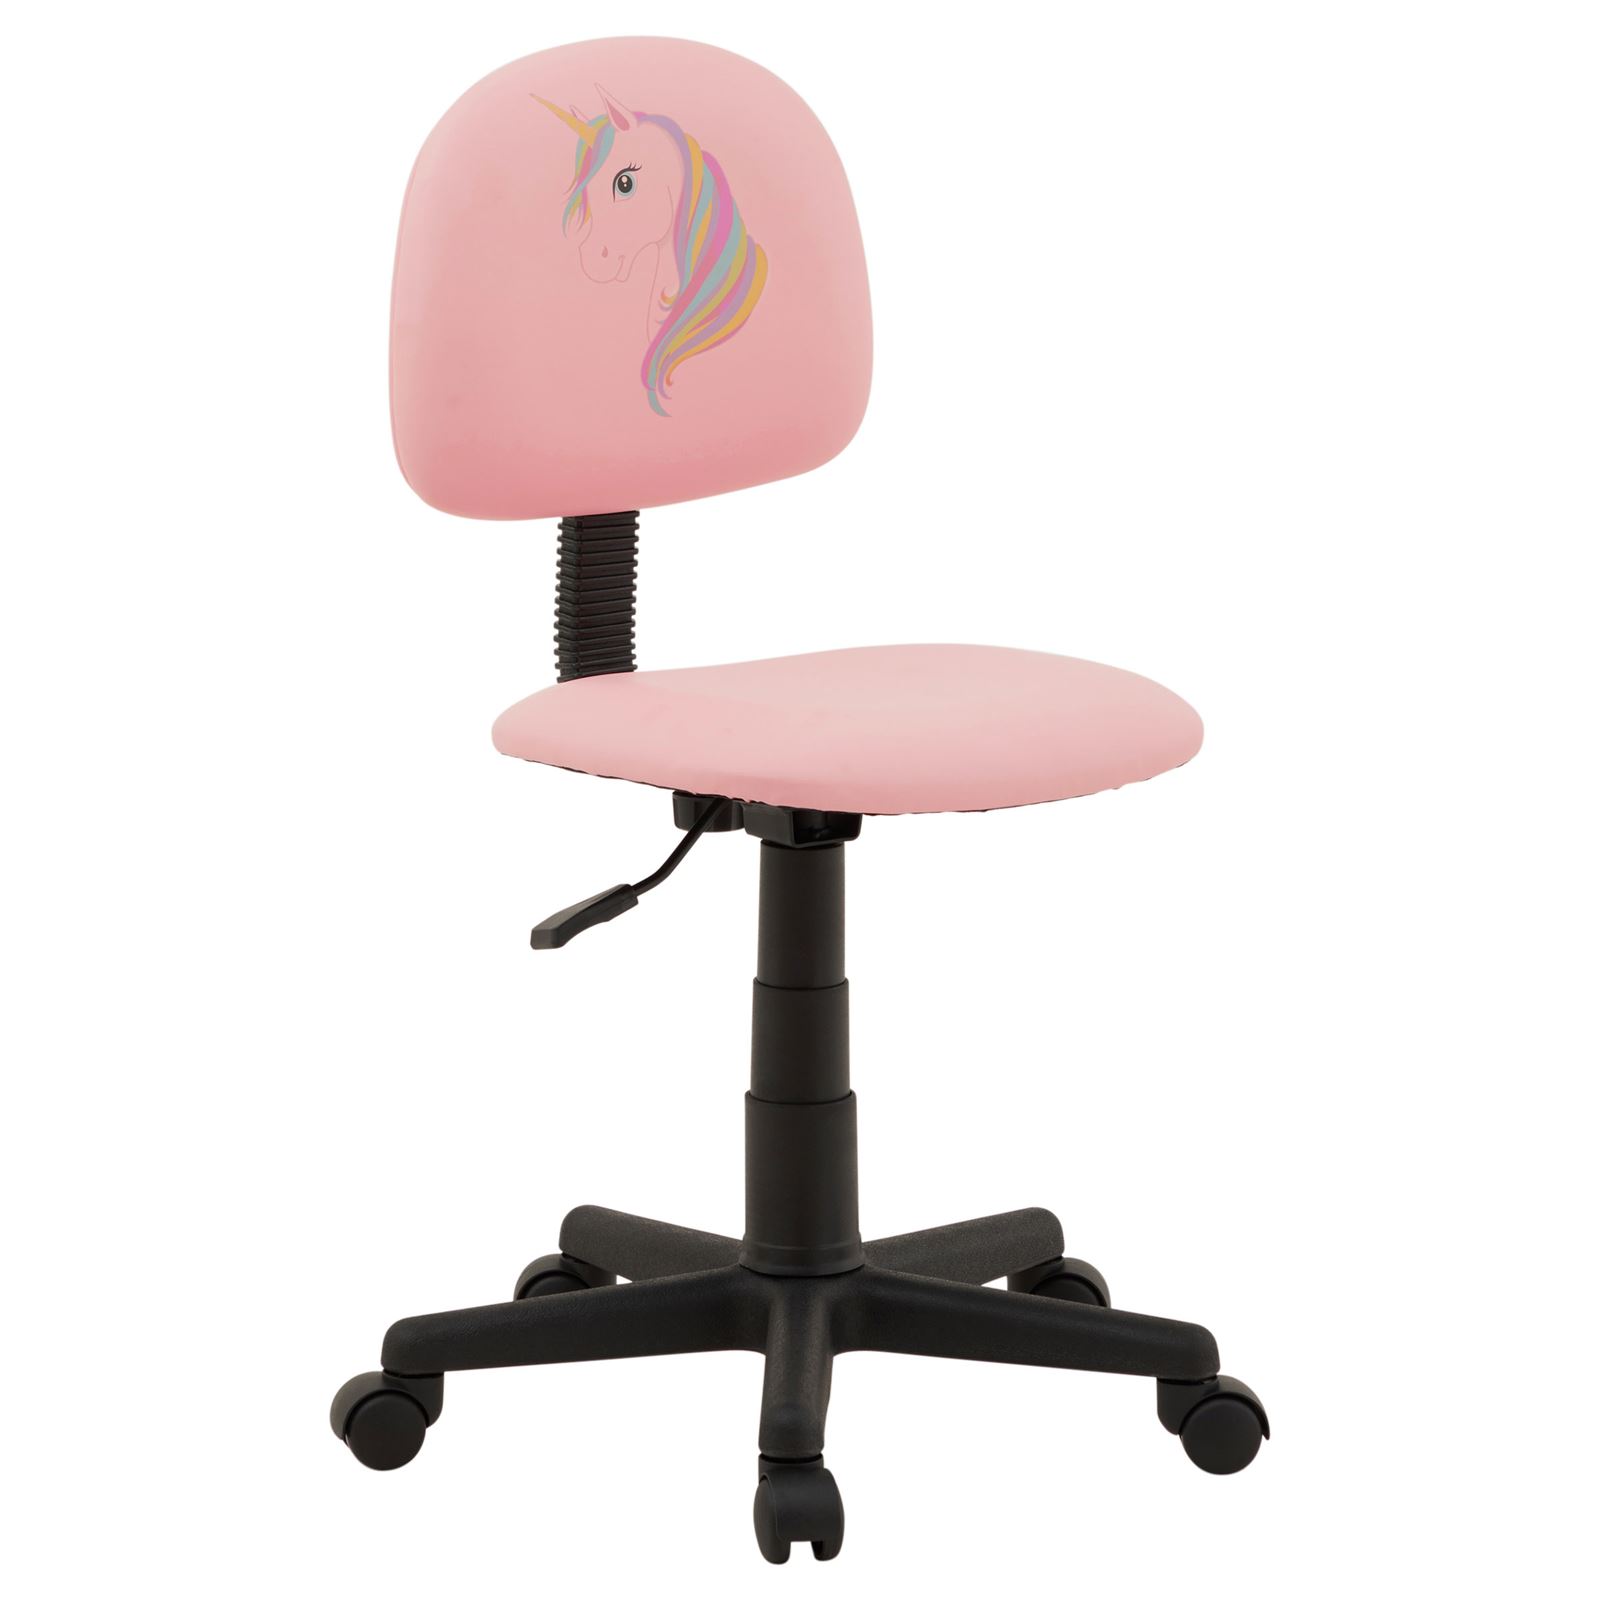 Chaise de bureau pour enfant UNICORN fauteuil pivotant sans accoudoirs  hauteur réglable, en synthétique rose avec motif licorne au meilleur prix